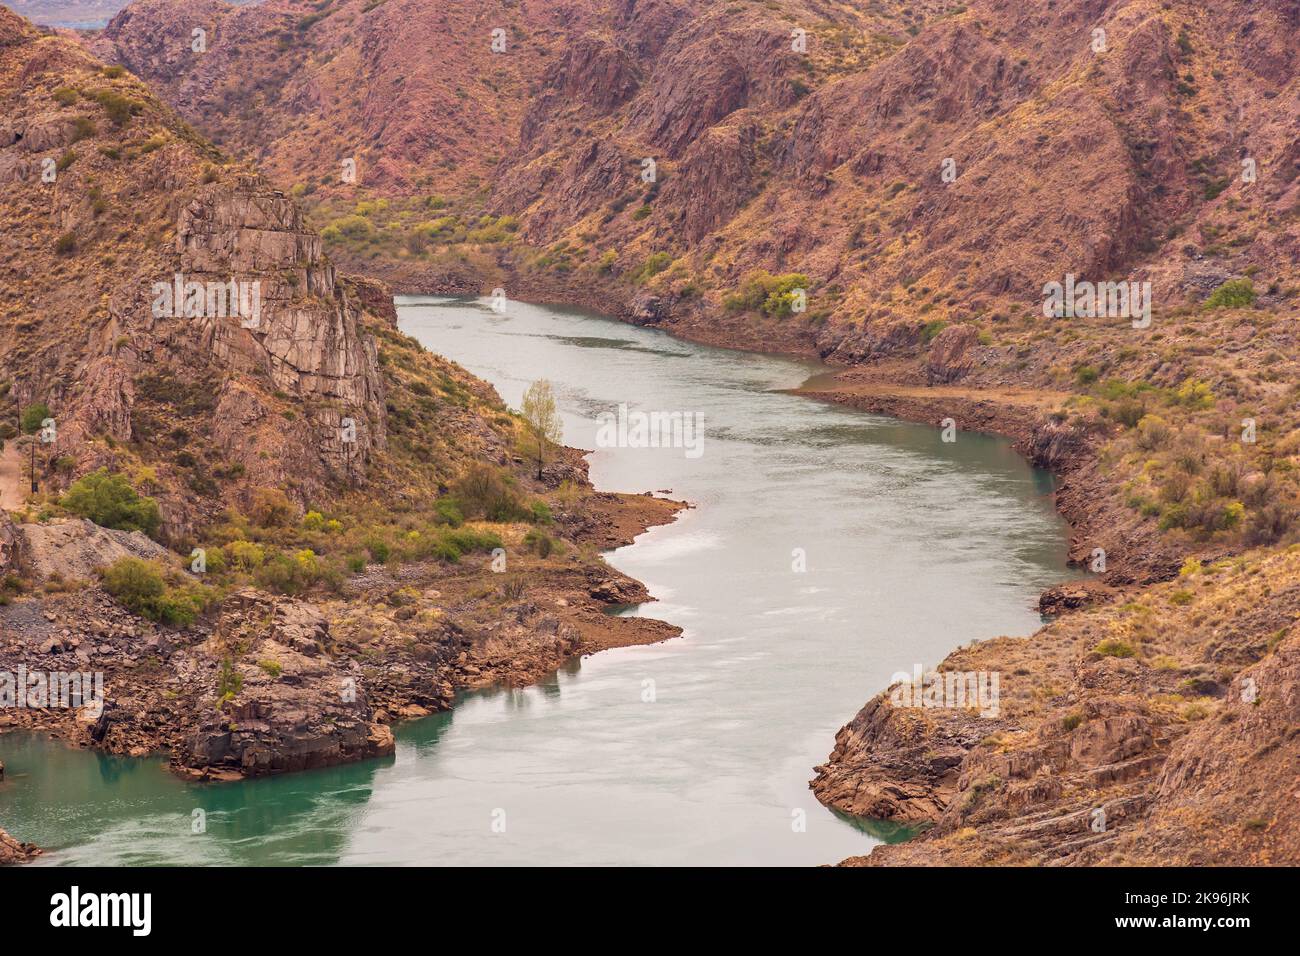 Une rivière cinématique entourée de falaises rouges à Provincia de Mendoza, en Argentine Banque D'Images